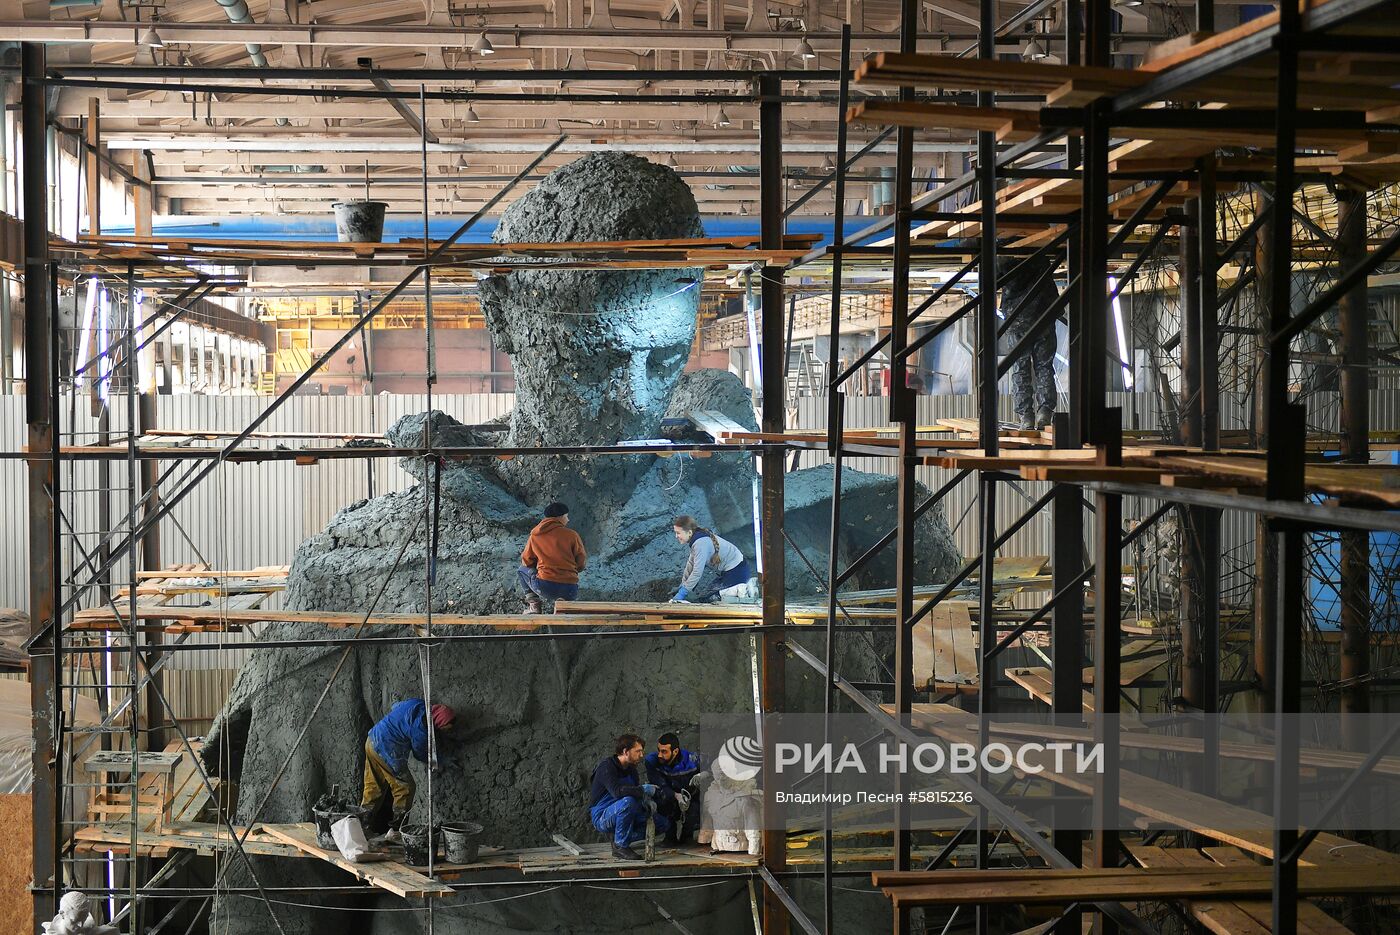 Модель центральной фигуры Ржевского мемориала Советскому солдату